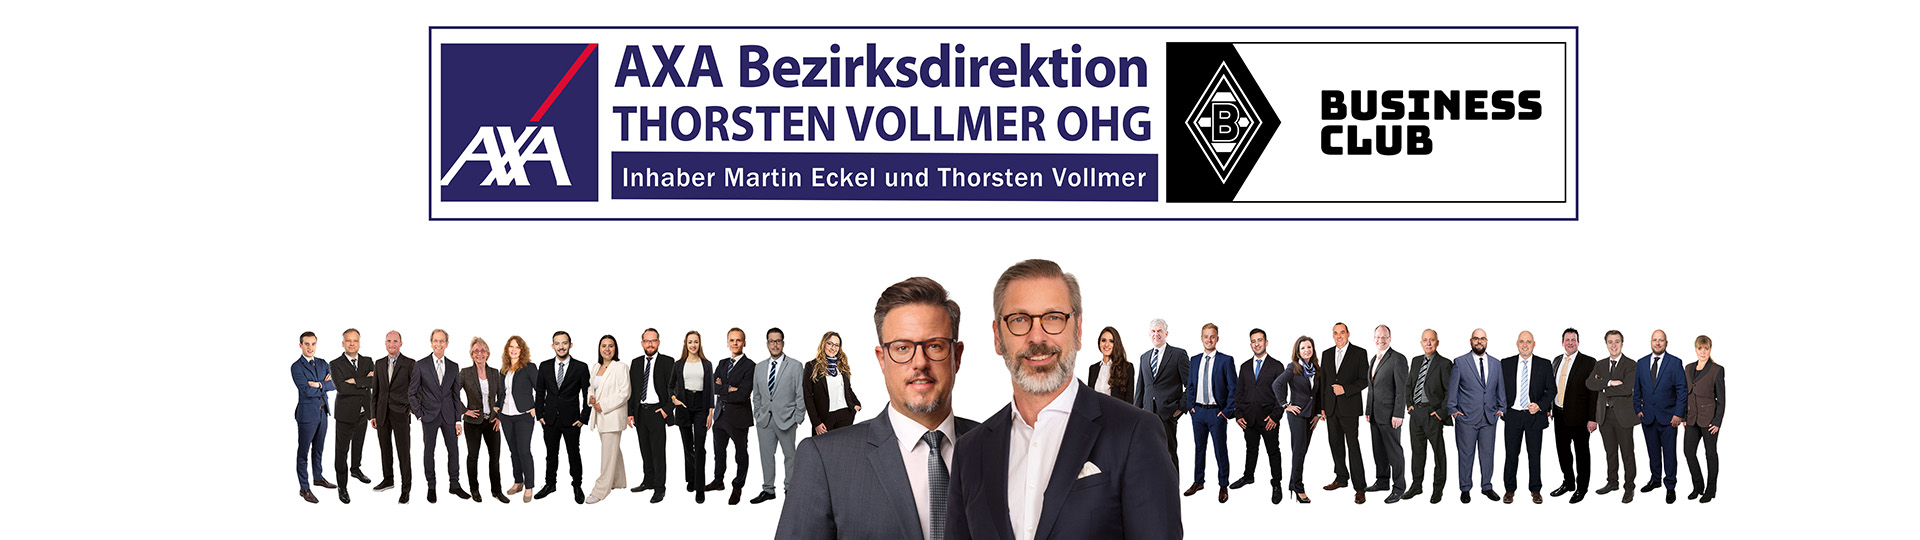 AXA Bezirksdirektion in Mönchengladbach Thorsten Vollmer OHG aus Mönchengladbach